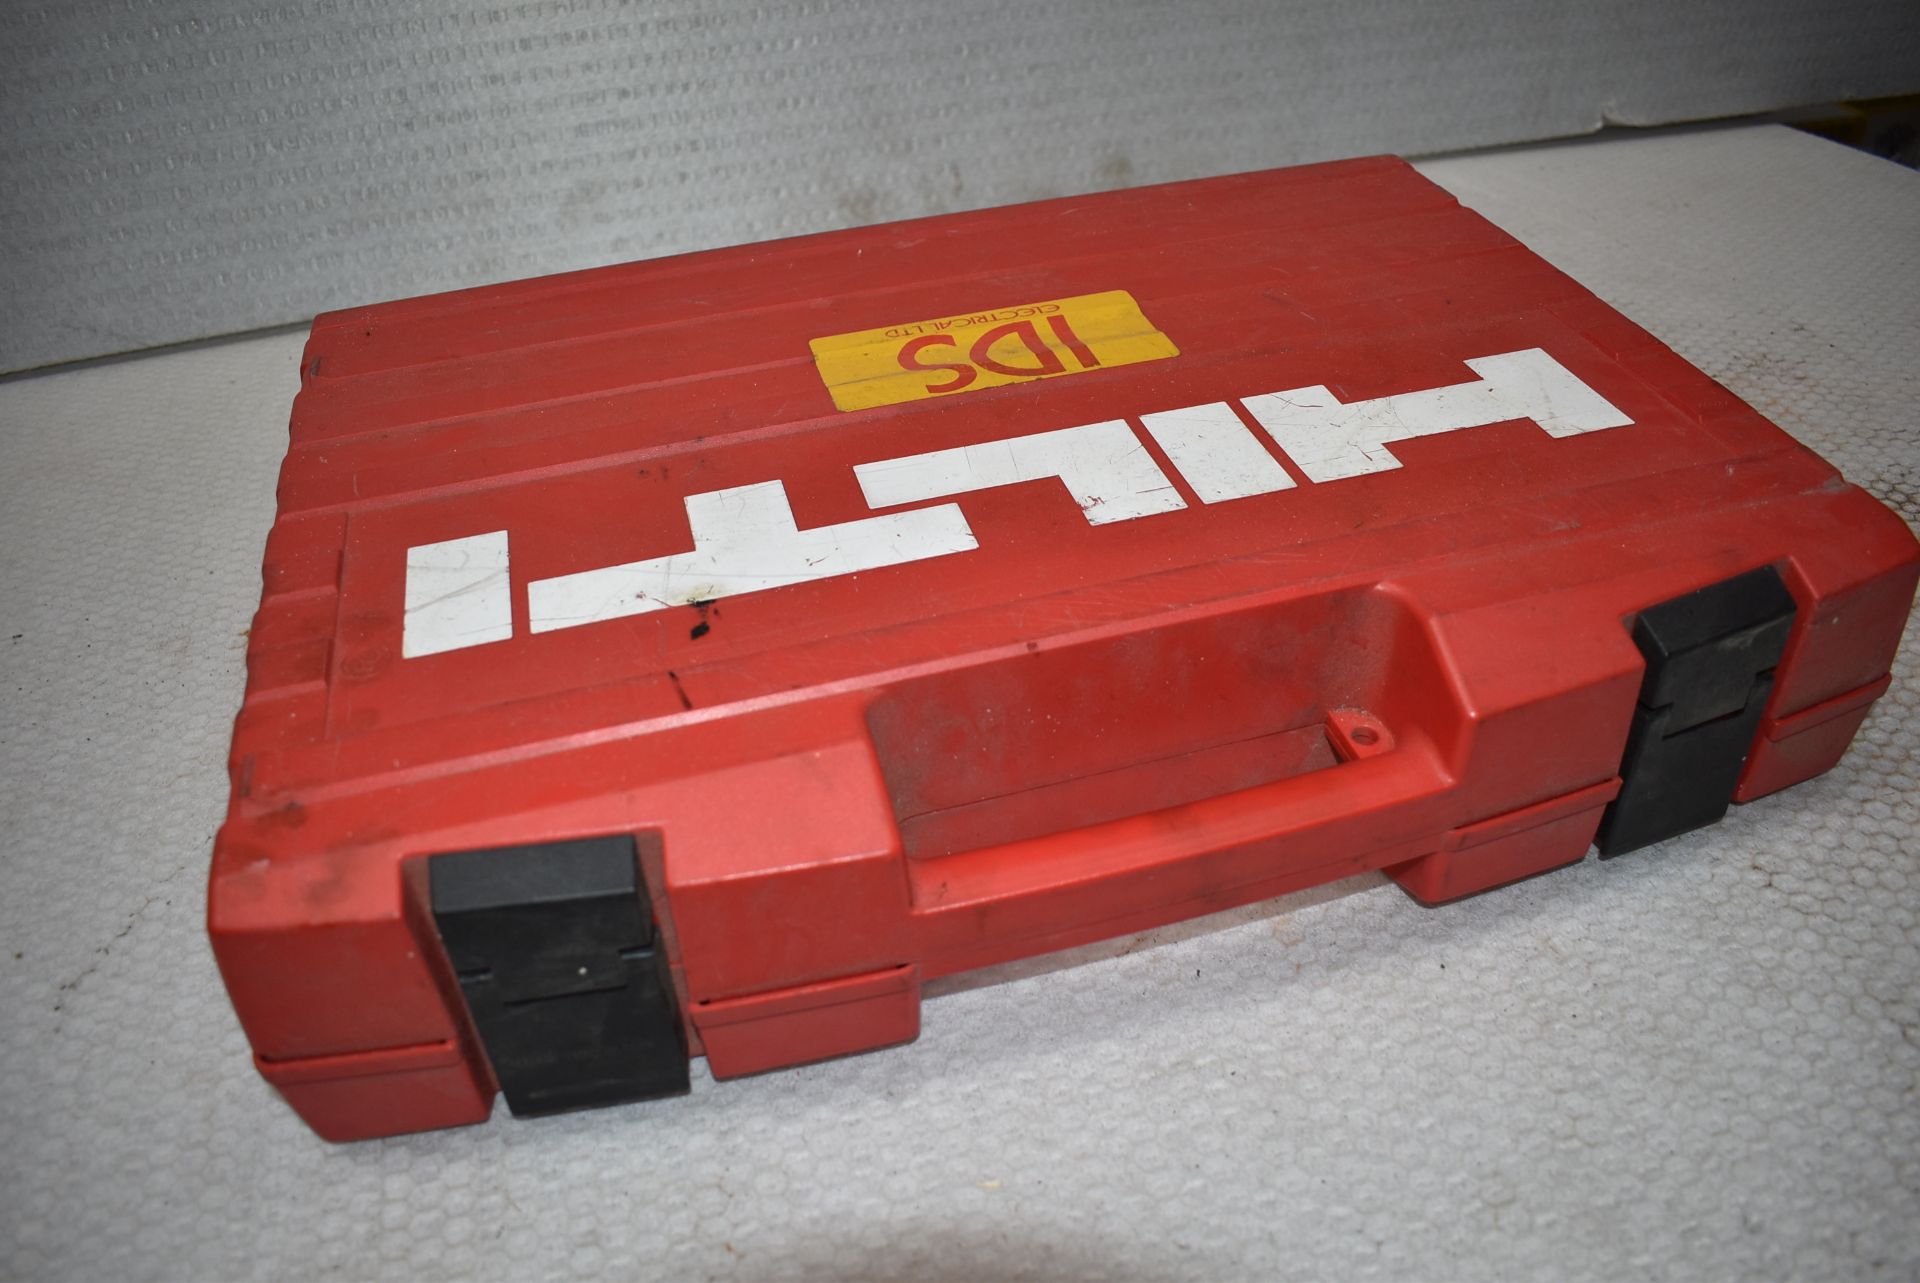 1 x Hilti DSC Foam Dispenser With Case - Ref: C182 - CL816 - Location: Altrincham WA14 - Image 5 of 7